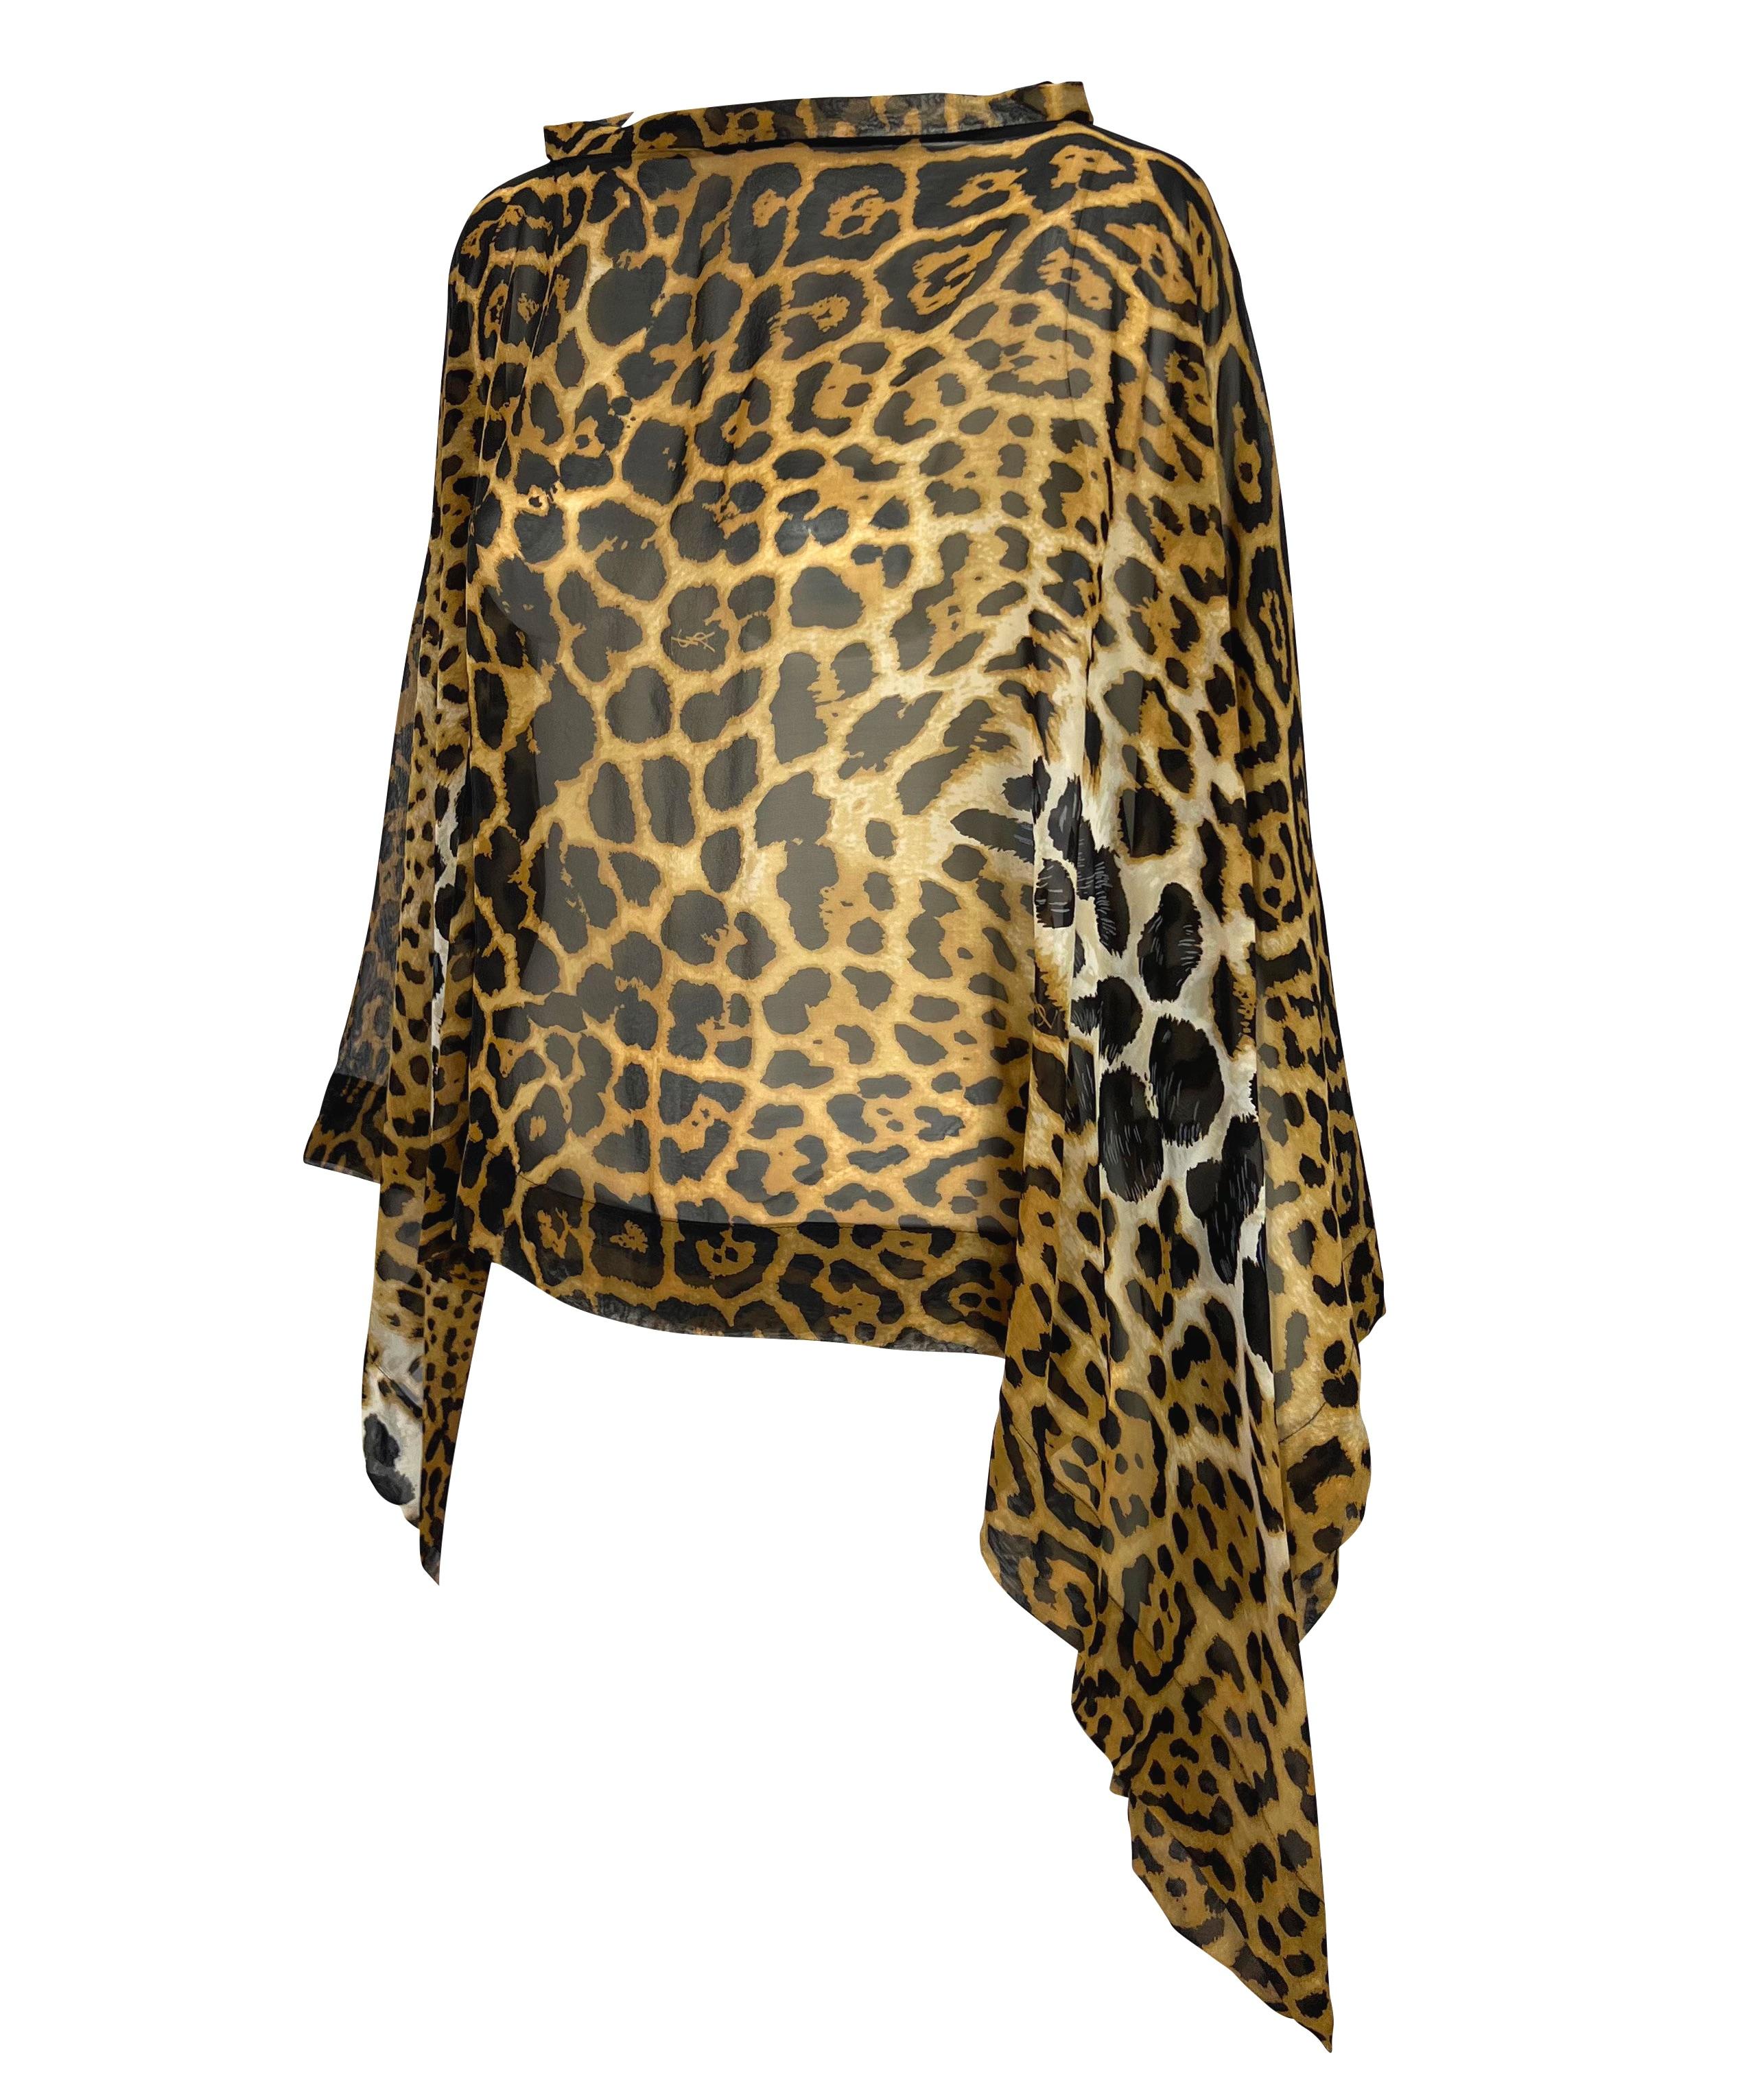 Wir präsentieren einen atemberaubenden Yves Saint Laurent Rive Gauche Poncho mit Gepardenmuster, entworfen von Tom Ford. Aus der Frühjahr/Sommer-Kollektion 2002 wurde derselbe Geparden-Print in der Kollektion der Saison stark verwendet. Dieses